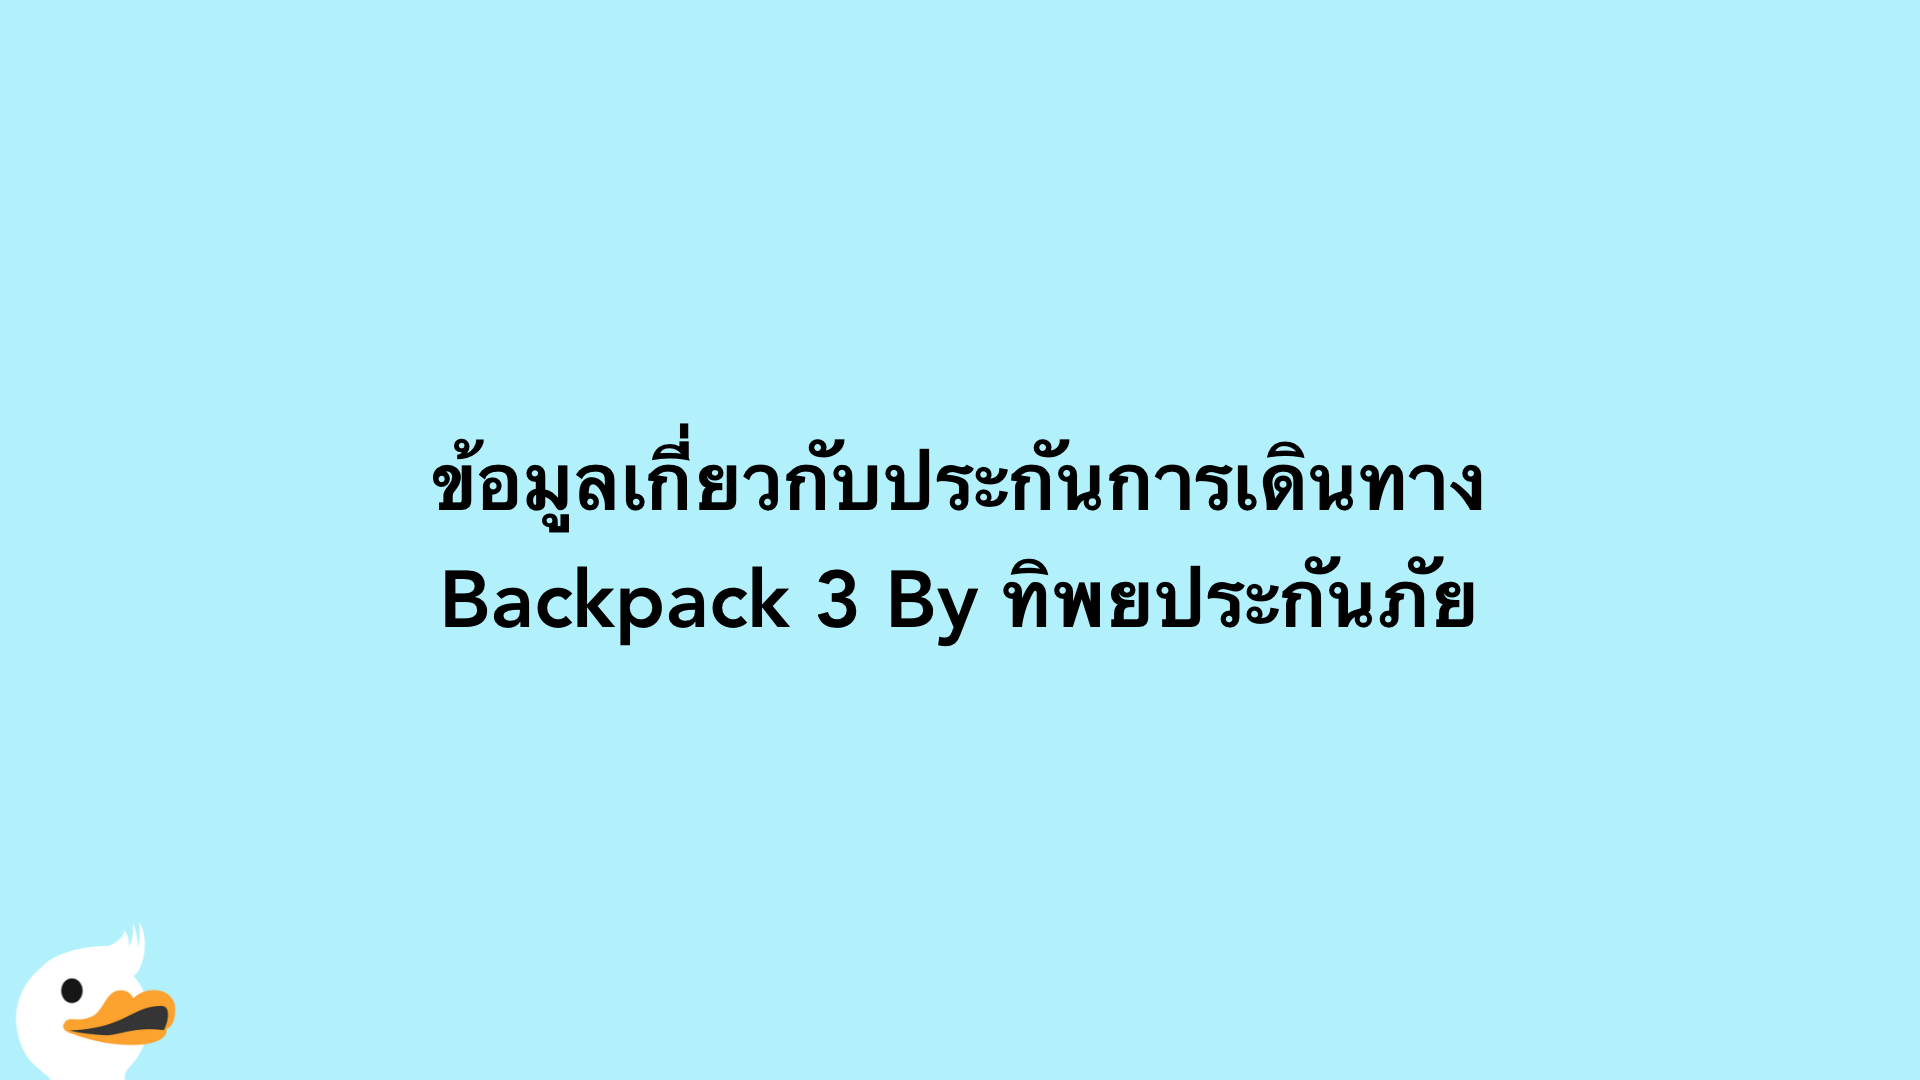 ข้อมูลเกี่ยวกับประกันการเดินทาง Backpack 3 By ทิพยประกันภัย